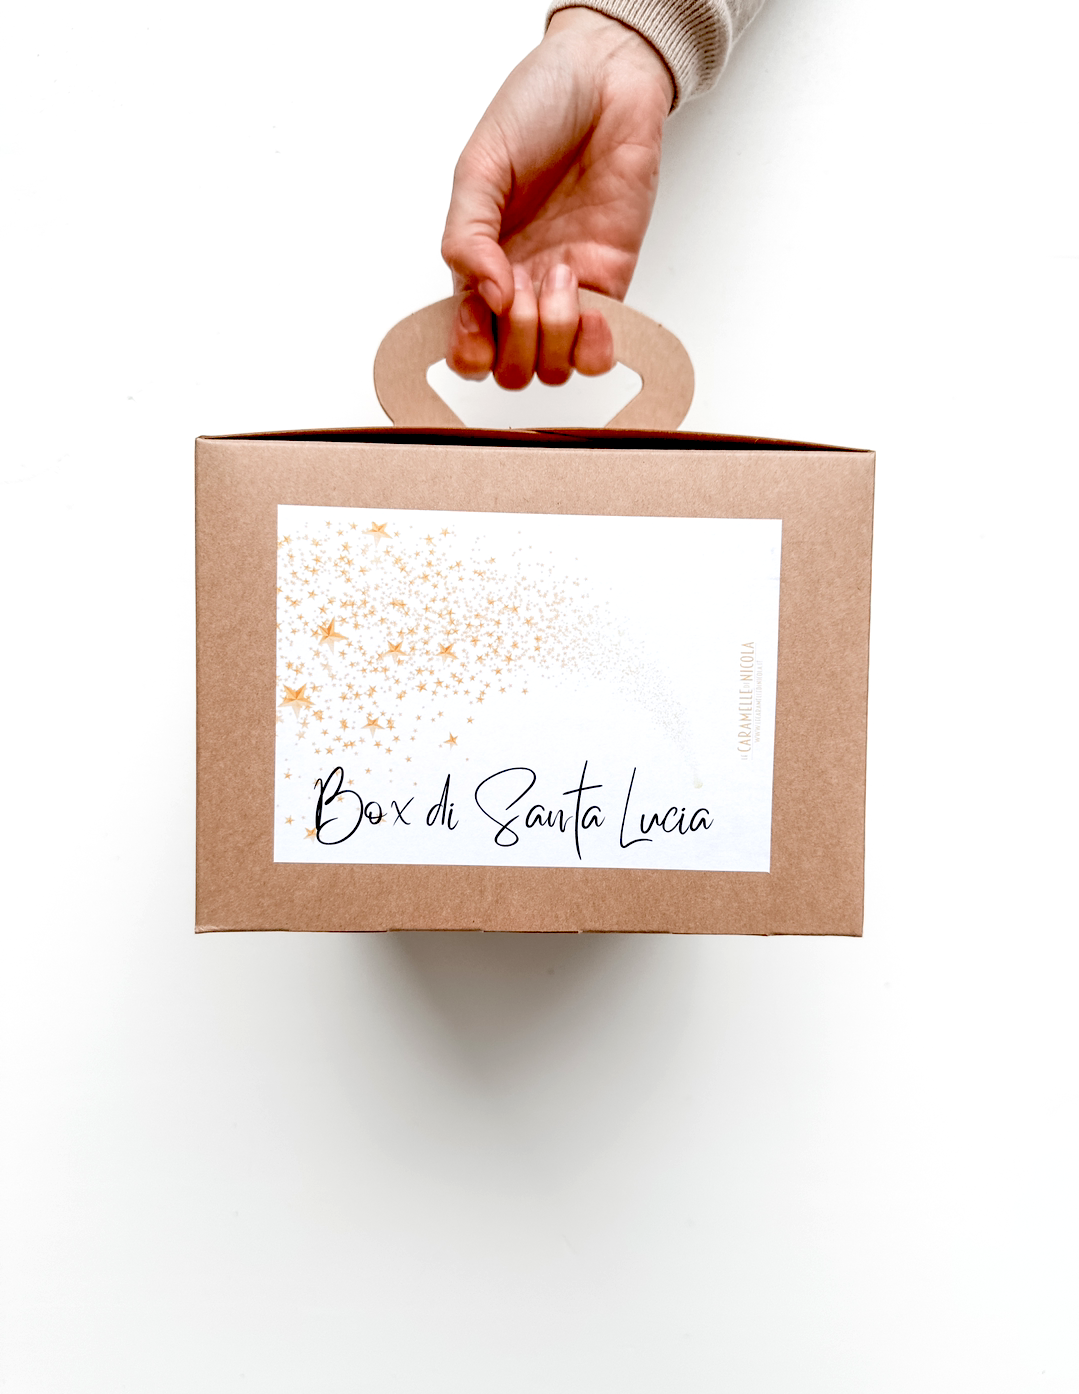 Box Santa Lucia – Latte e Miele di Nicola Metelli